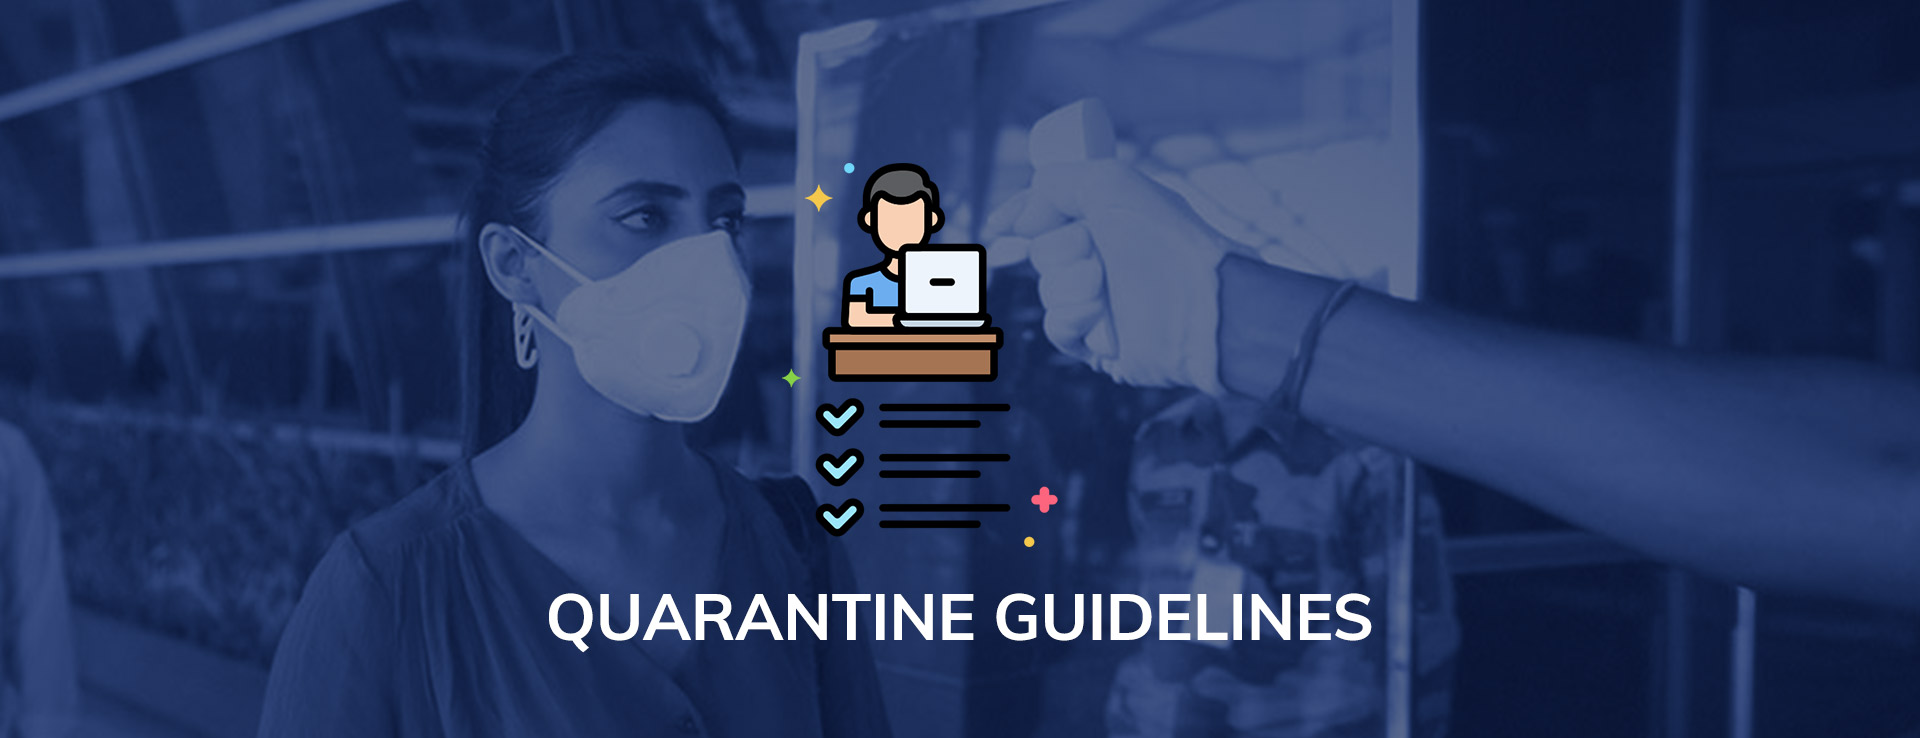 Quarantine Guidelines for Delhi Airport Passengers